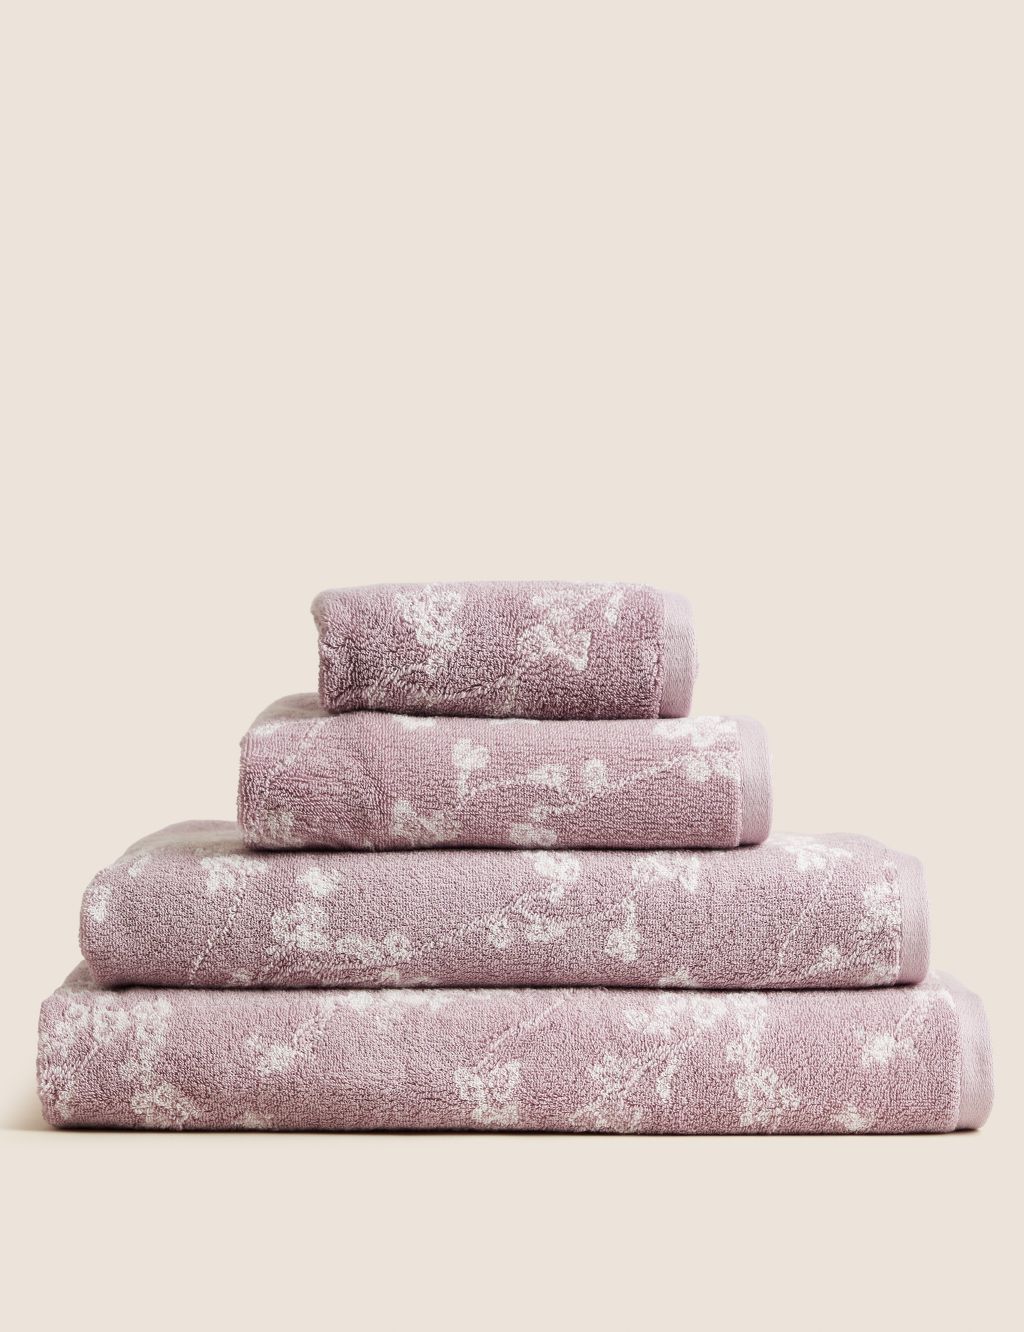 Super Soft Pure Cotton Floral Jacquard Towel 2 of 6